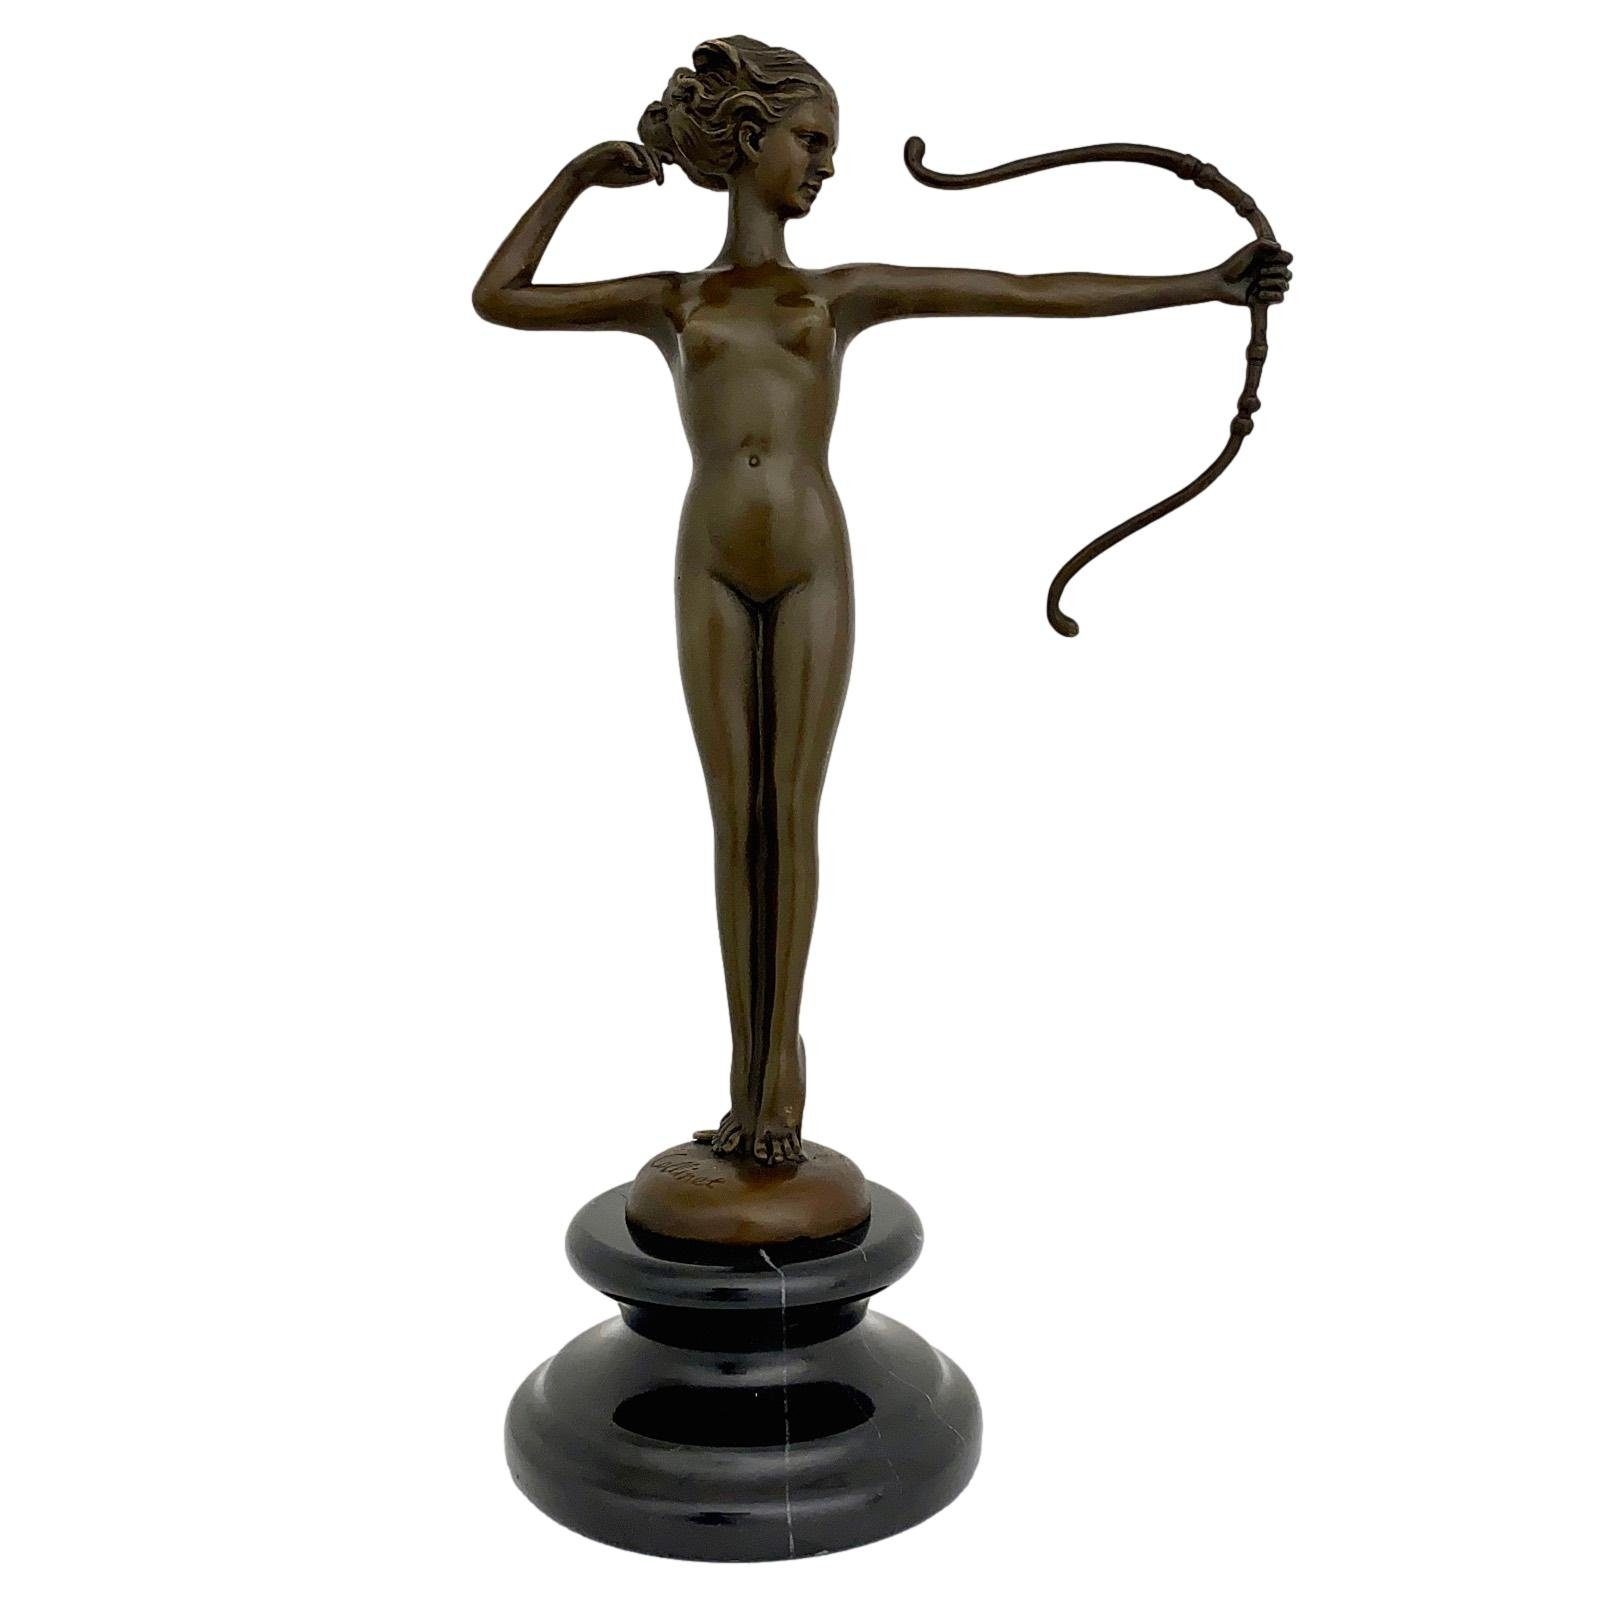 außergewöhnlich Aubaho Skulptur Antik-Stil Figur Statue Bronzeskulptur Bogen Diana Bronzefigur Bronze